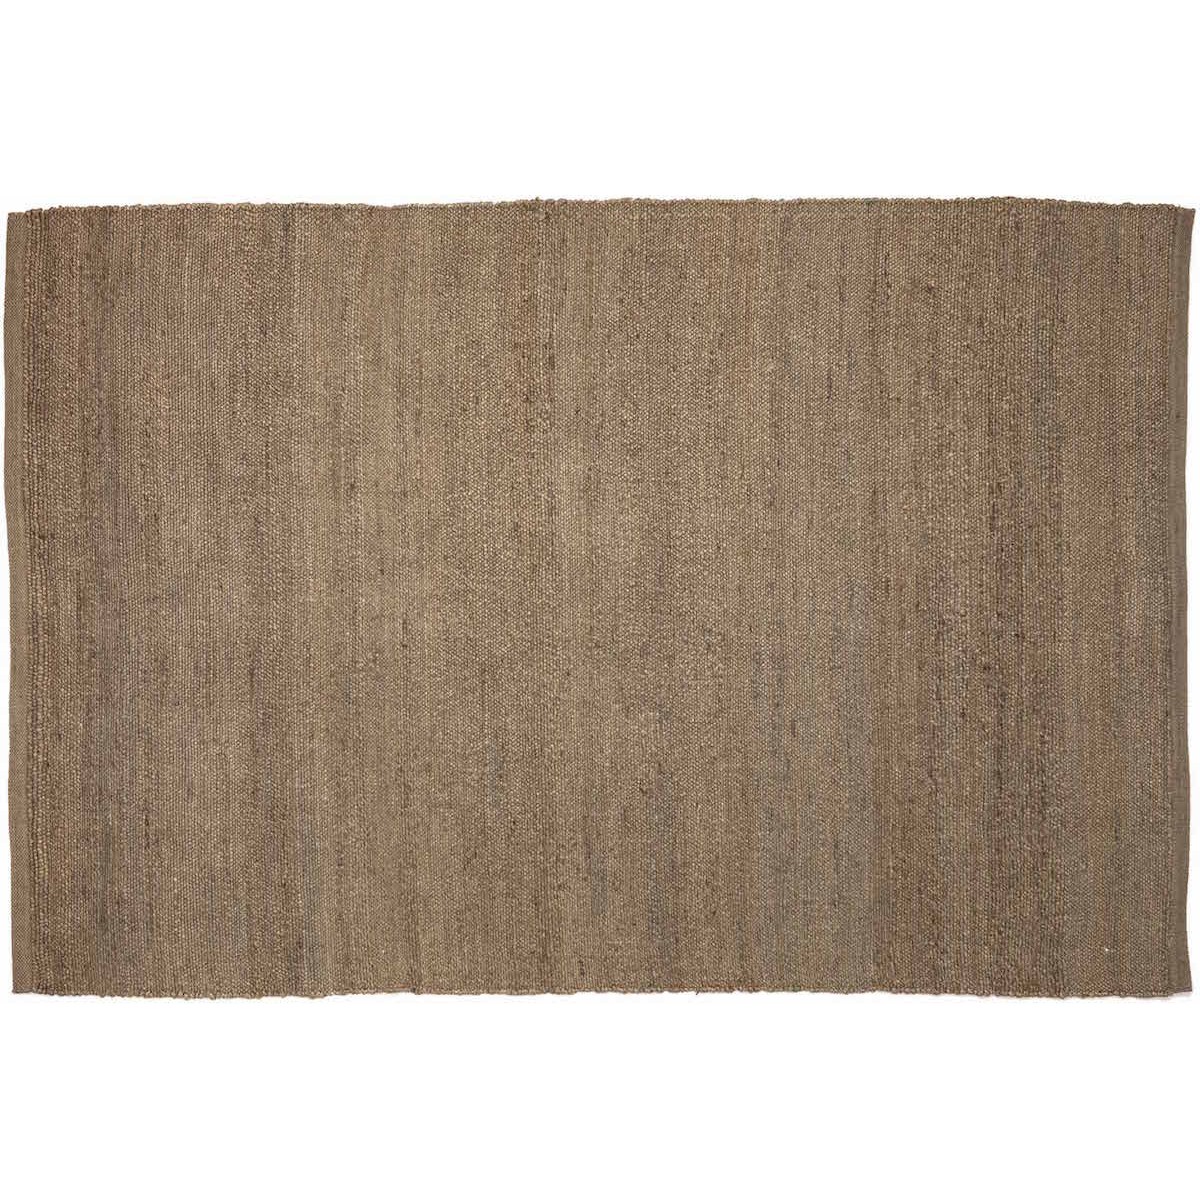 170x240cm - brown - Herb rug